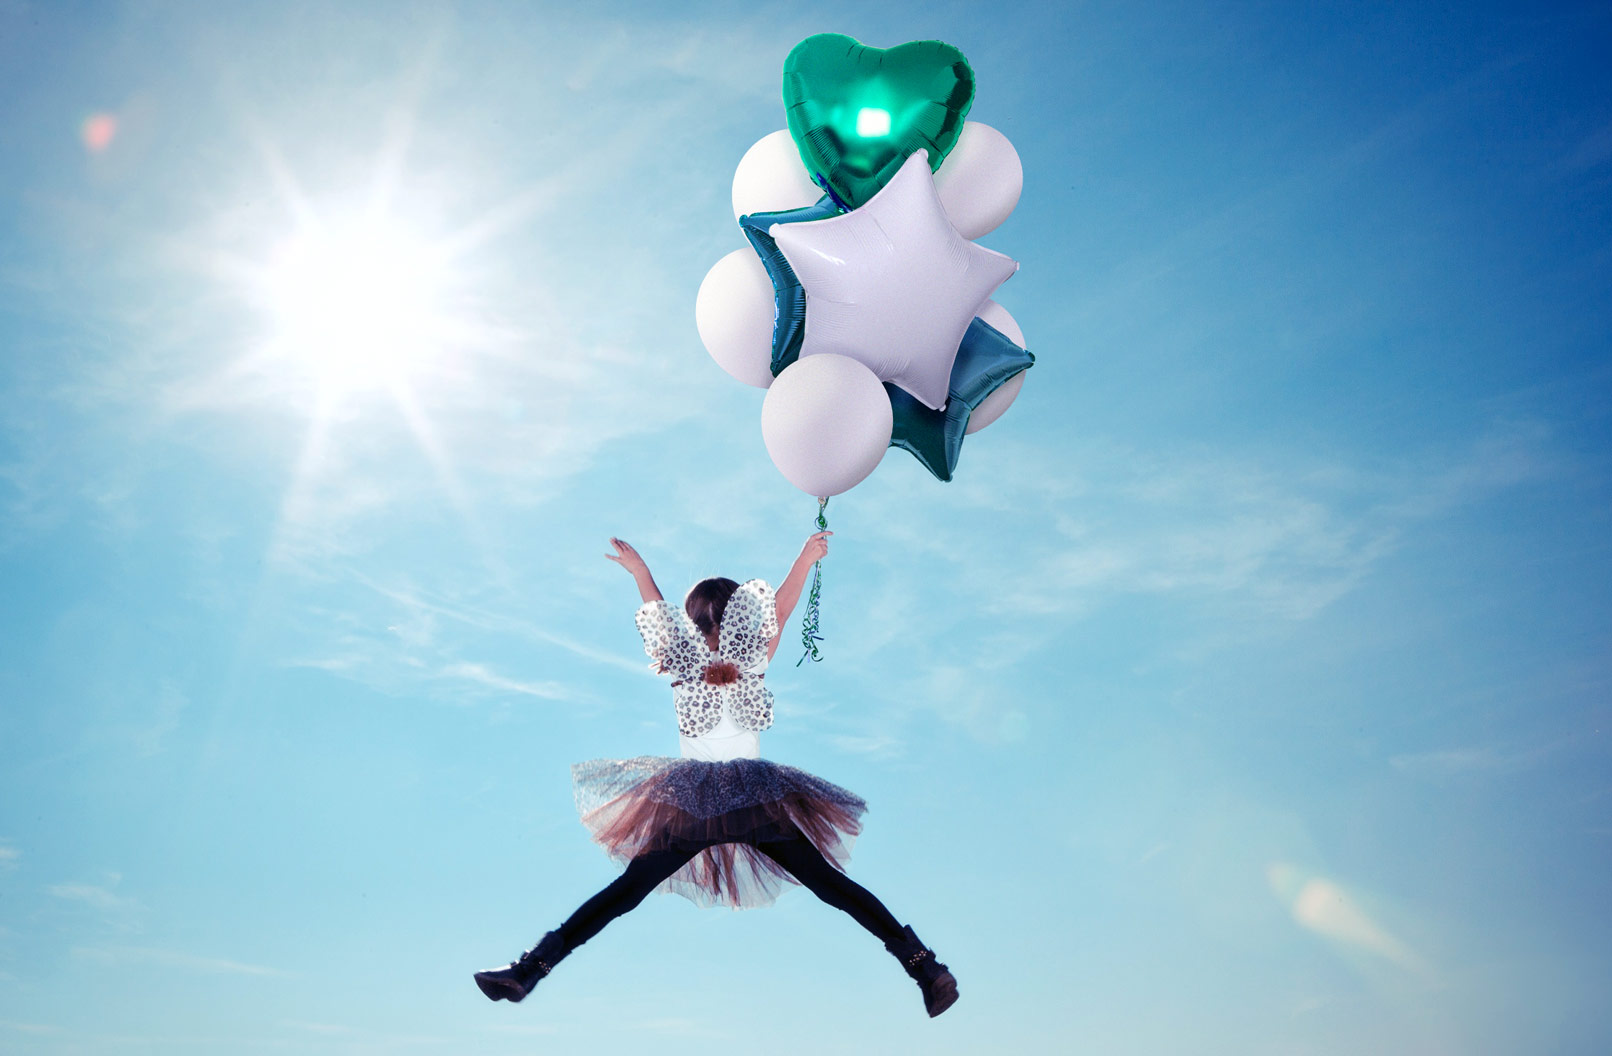 80 Bilder mit bunten Luftballons vor transparentem Hintergrund